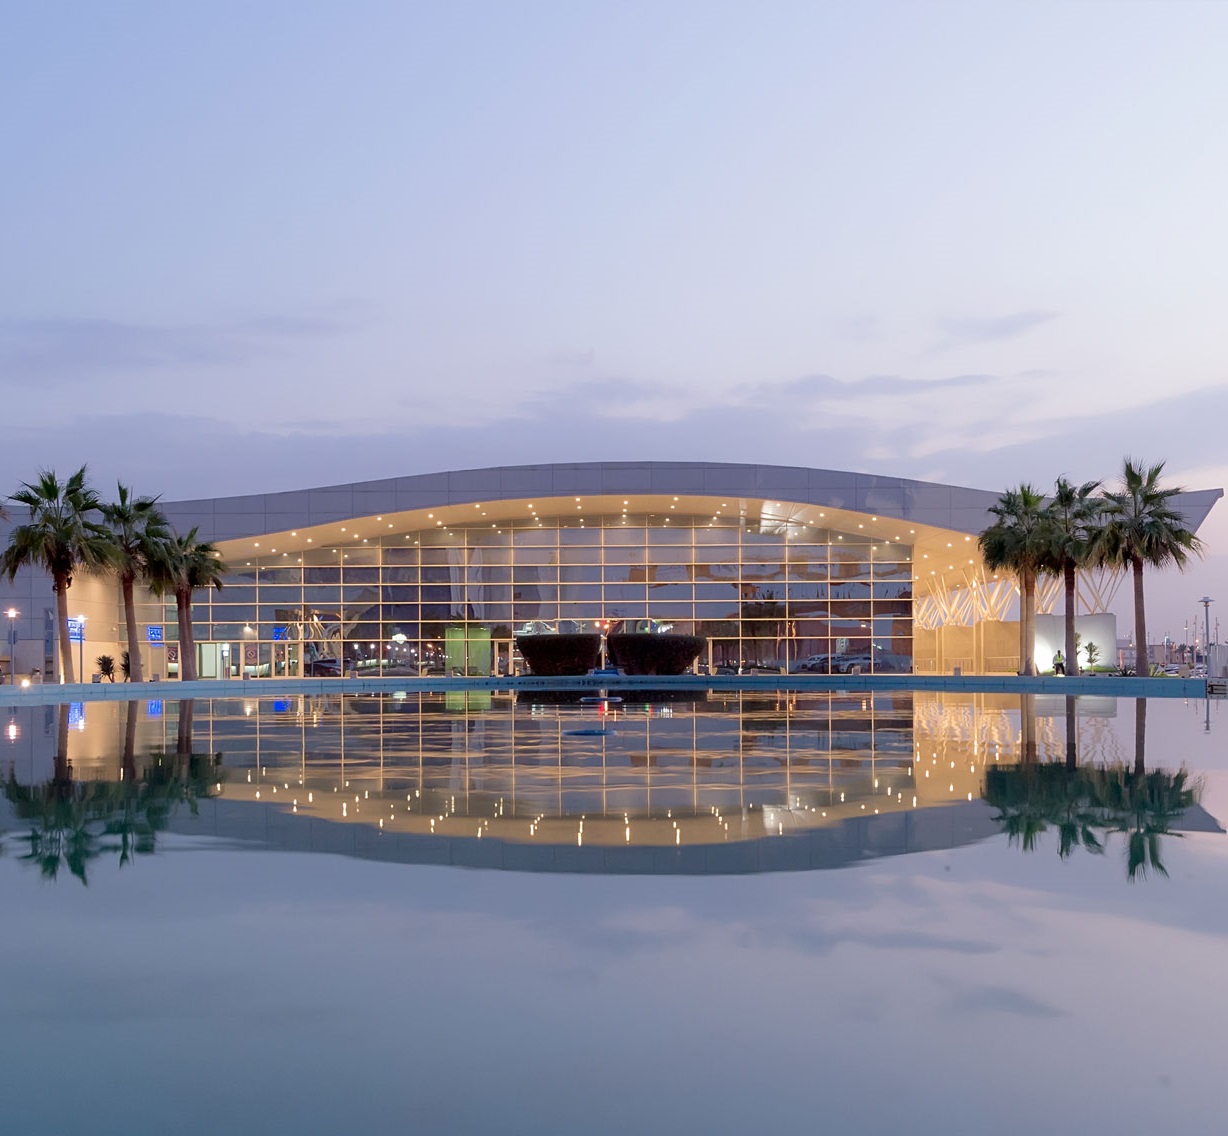 Riyadh International Convention & Exhibition Center